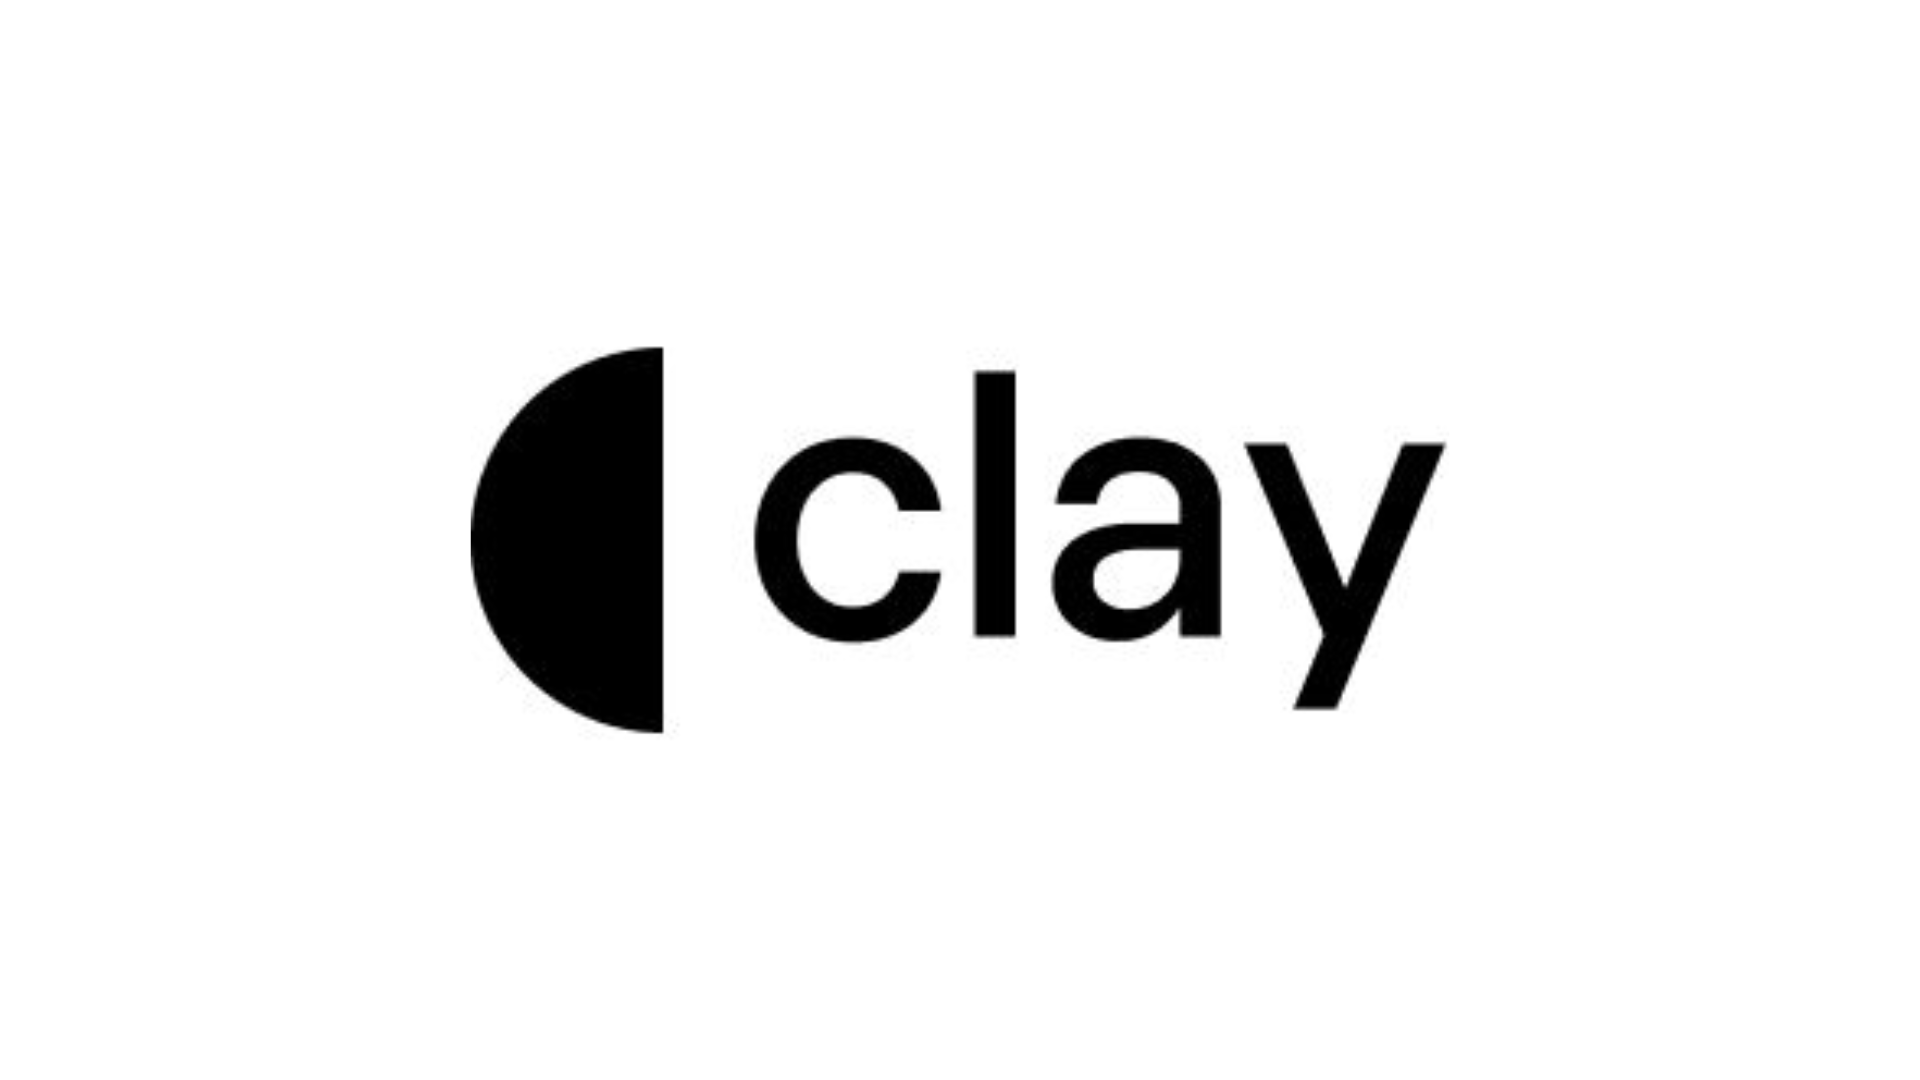 clay logo